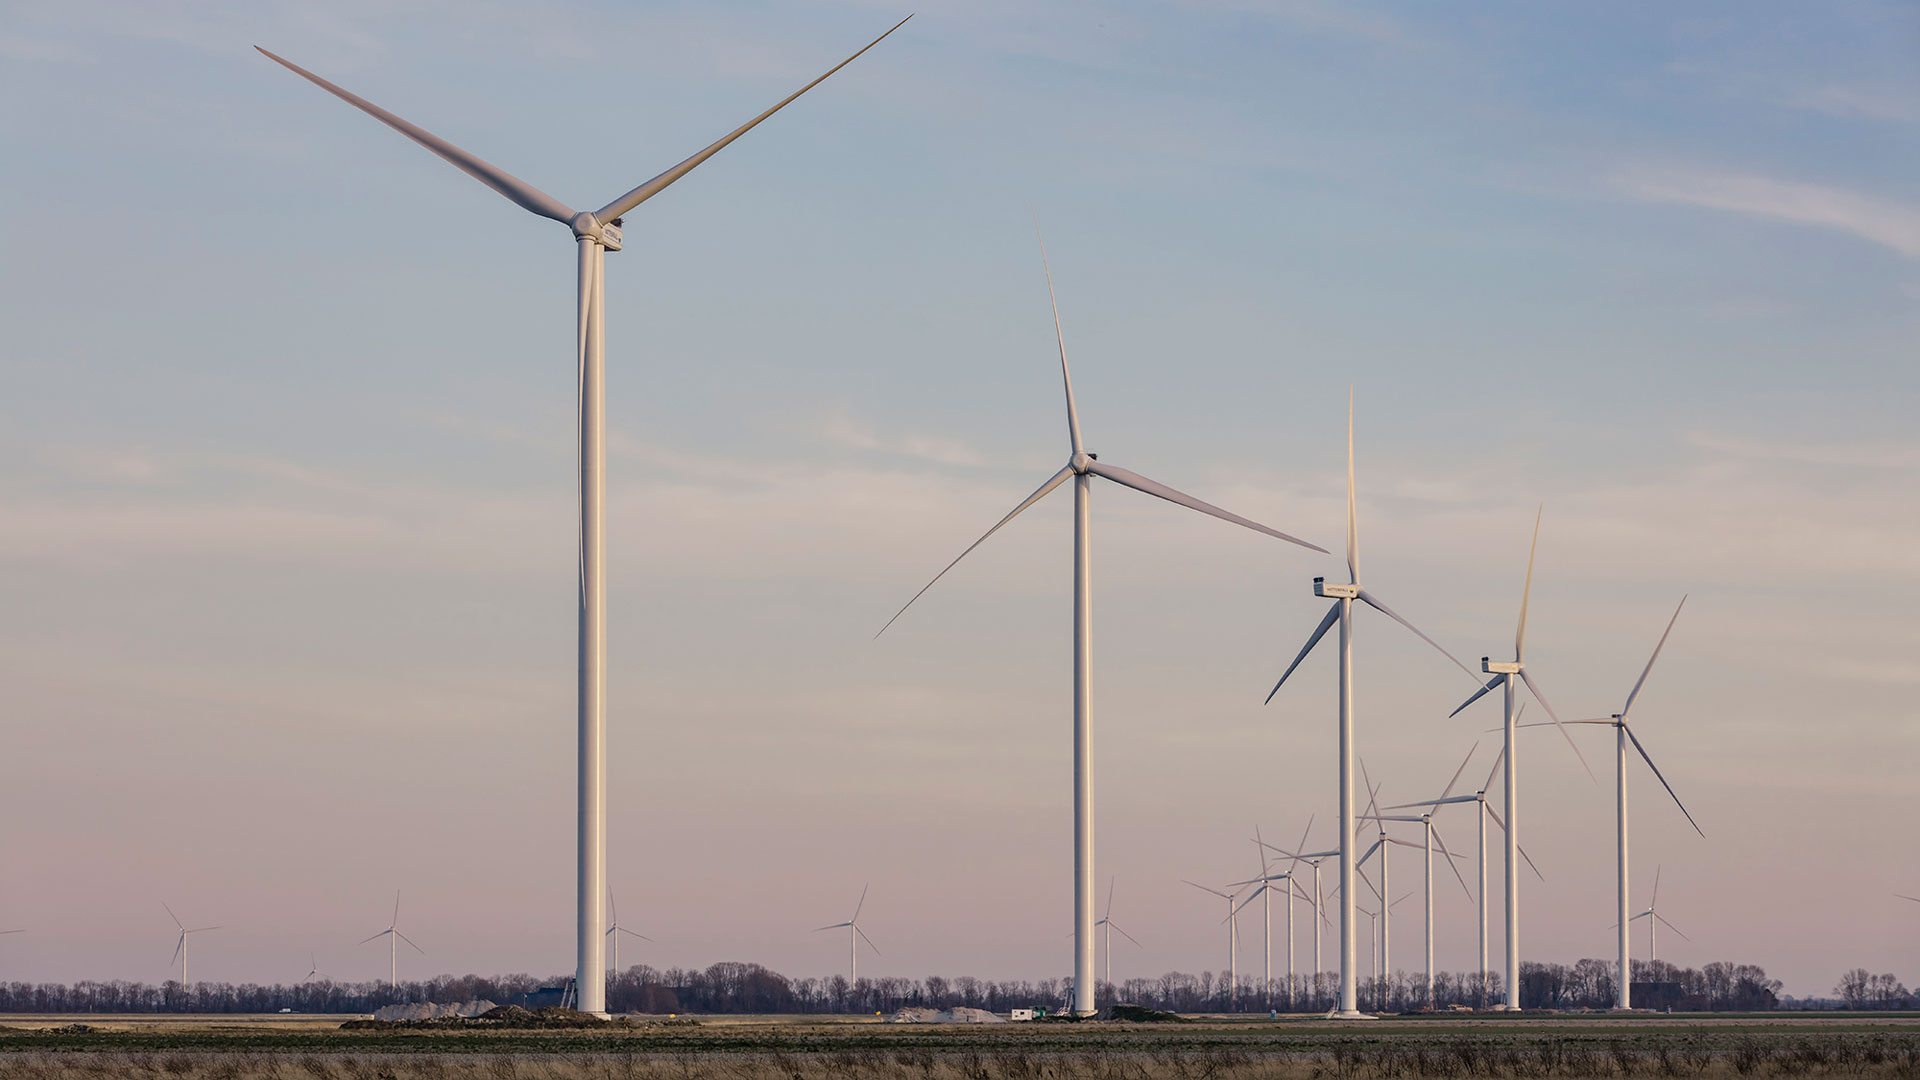 Wieringermeer windfarm. Photo: jlousberg